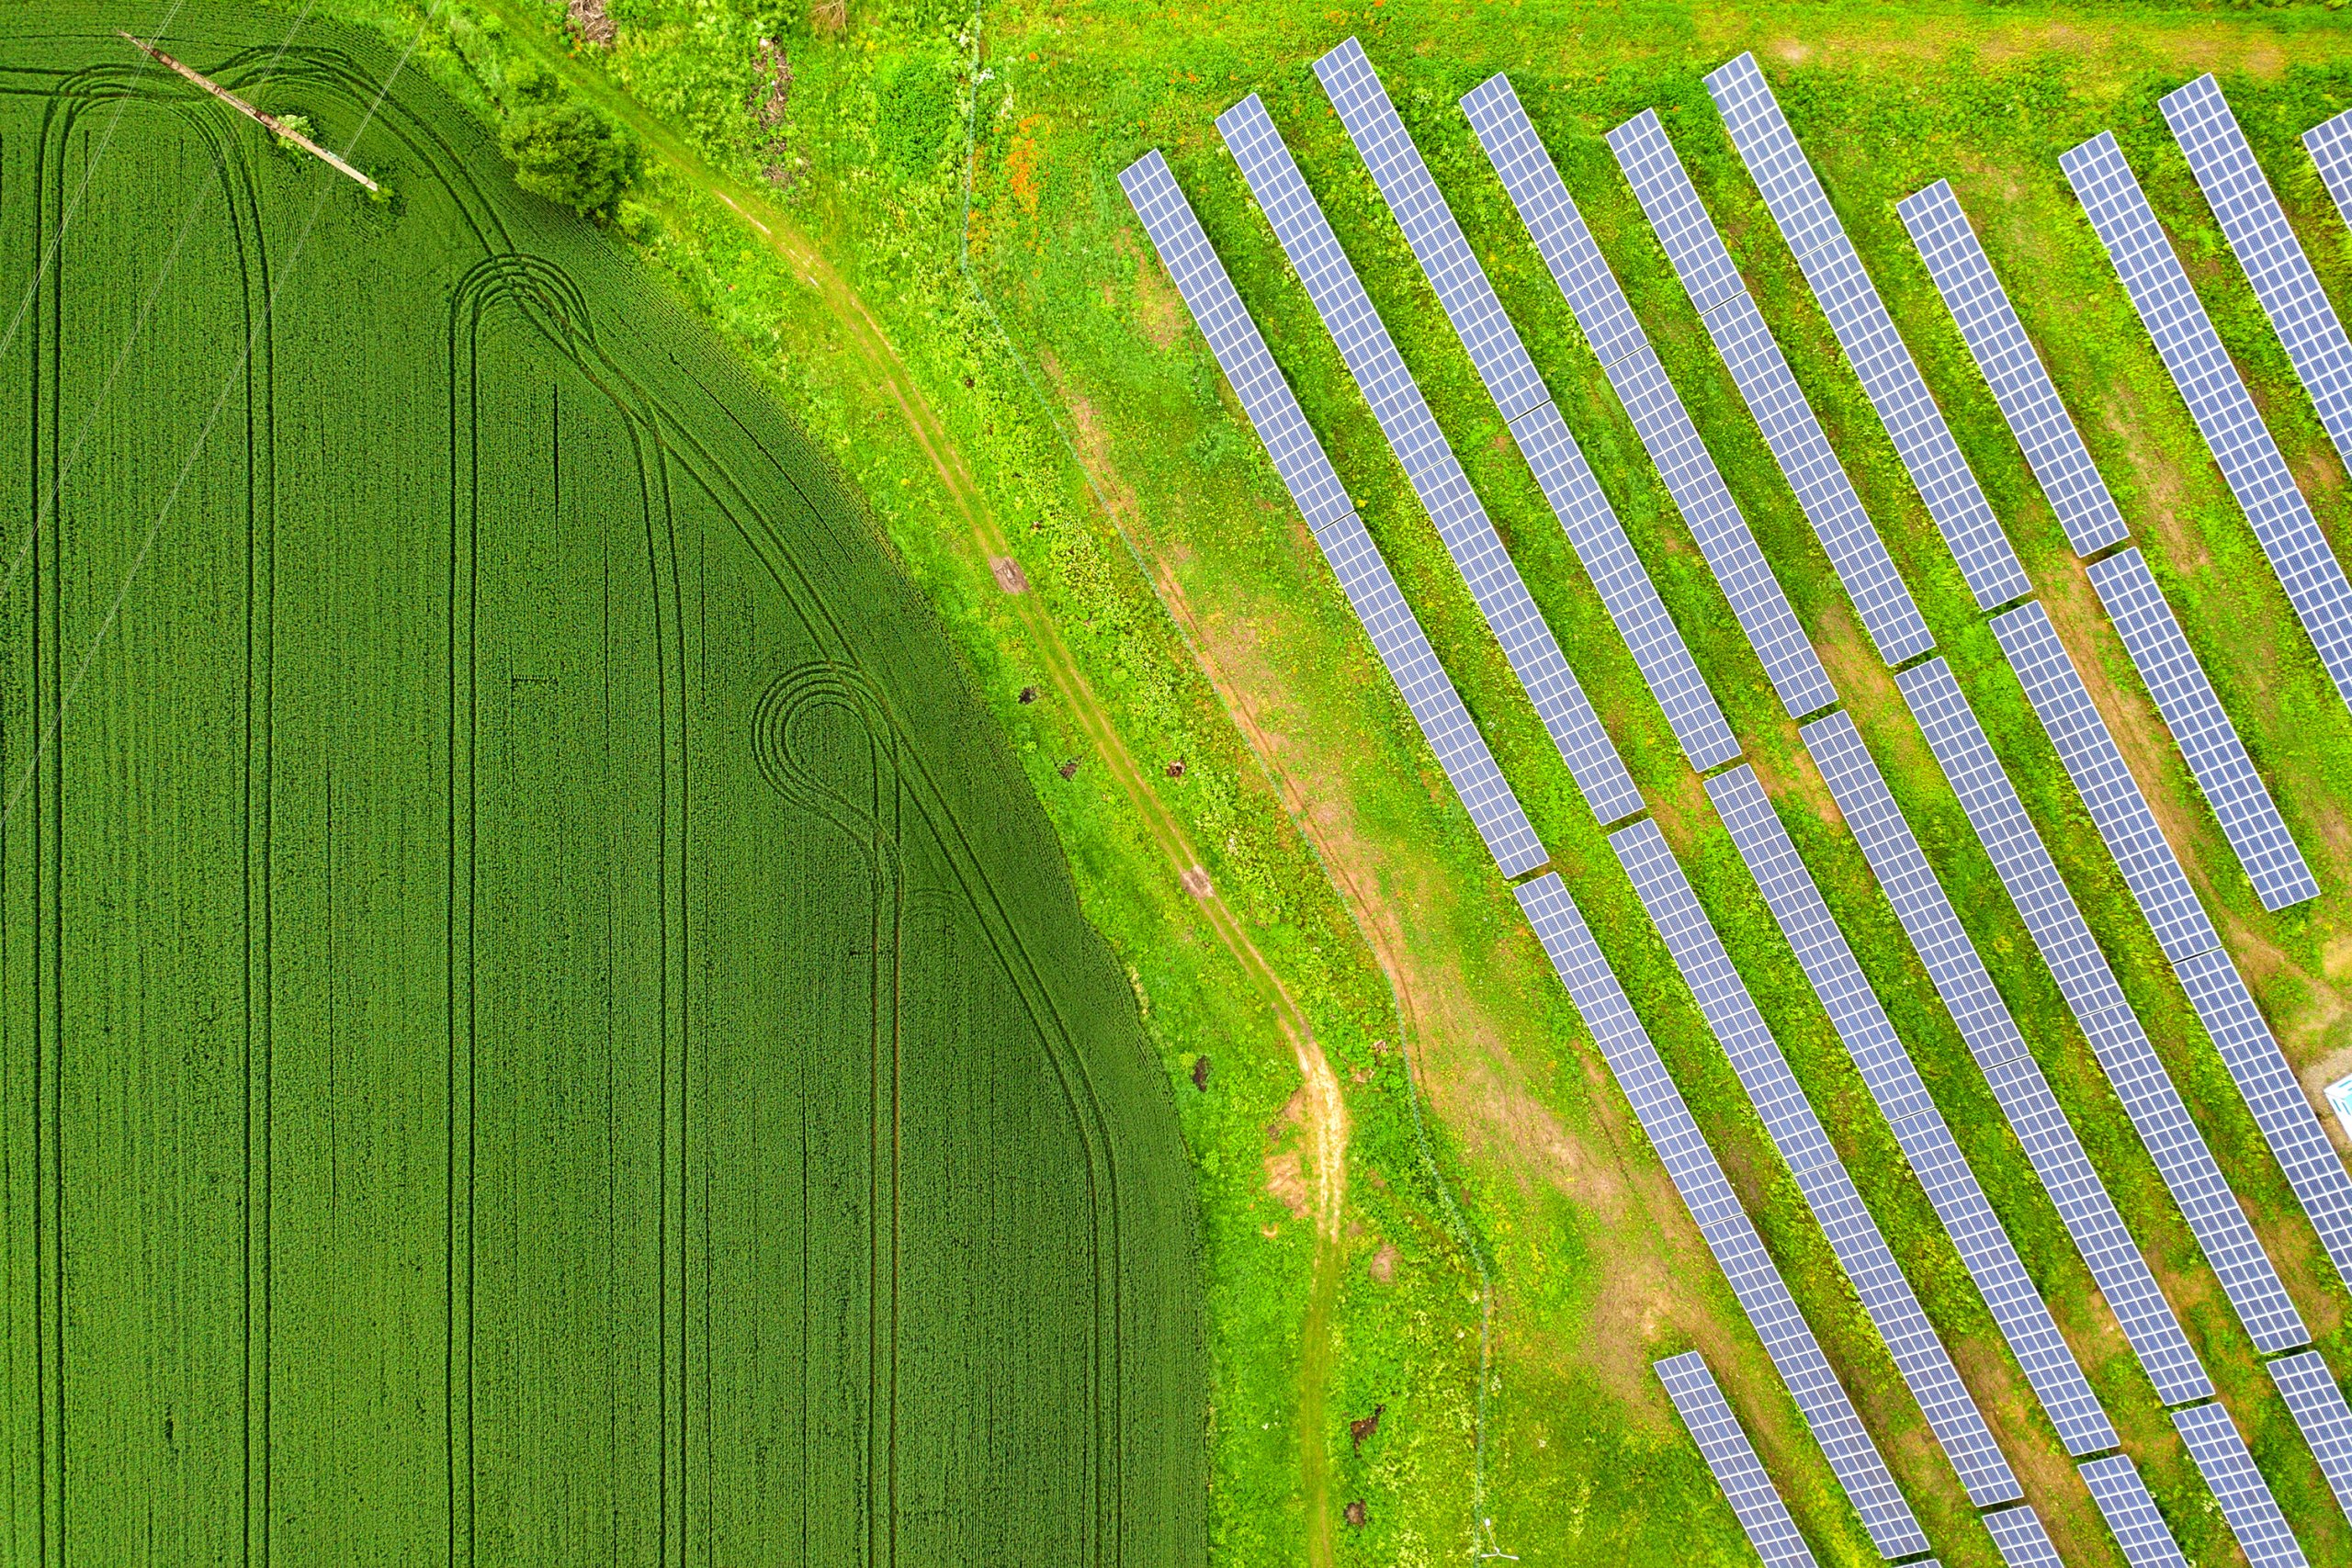 Luftaufnahme Solarpark mit Wiese